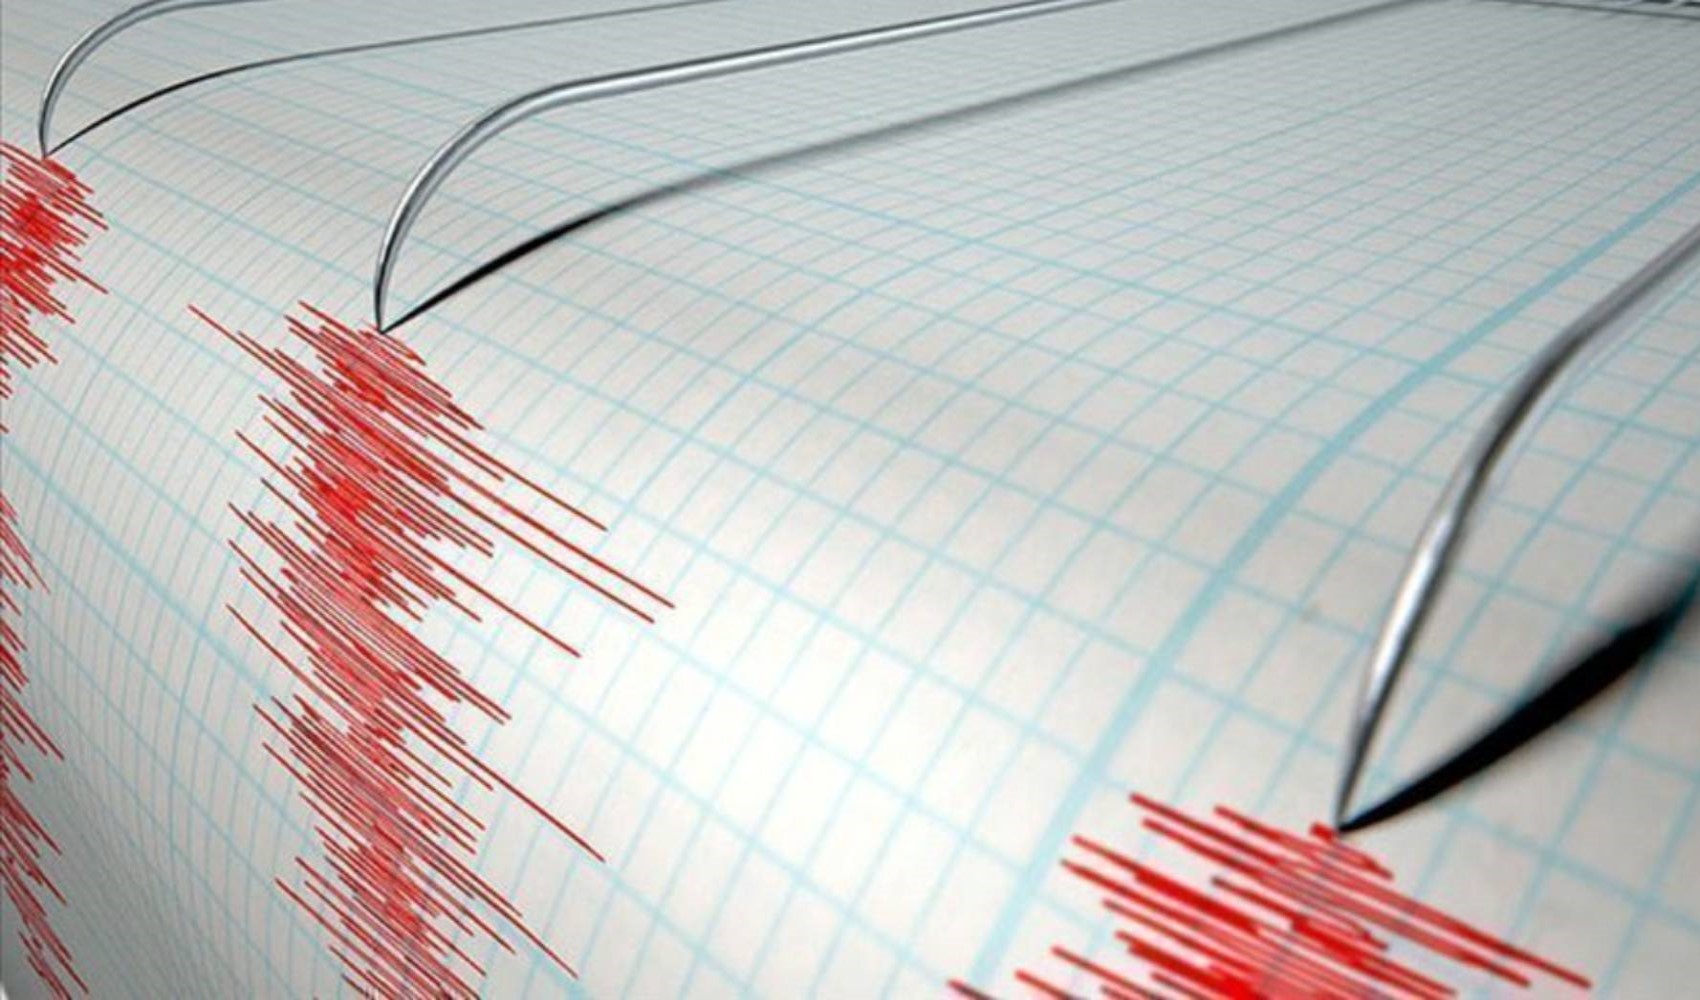 Konya'da 3.5 büyüklüğünde deprem